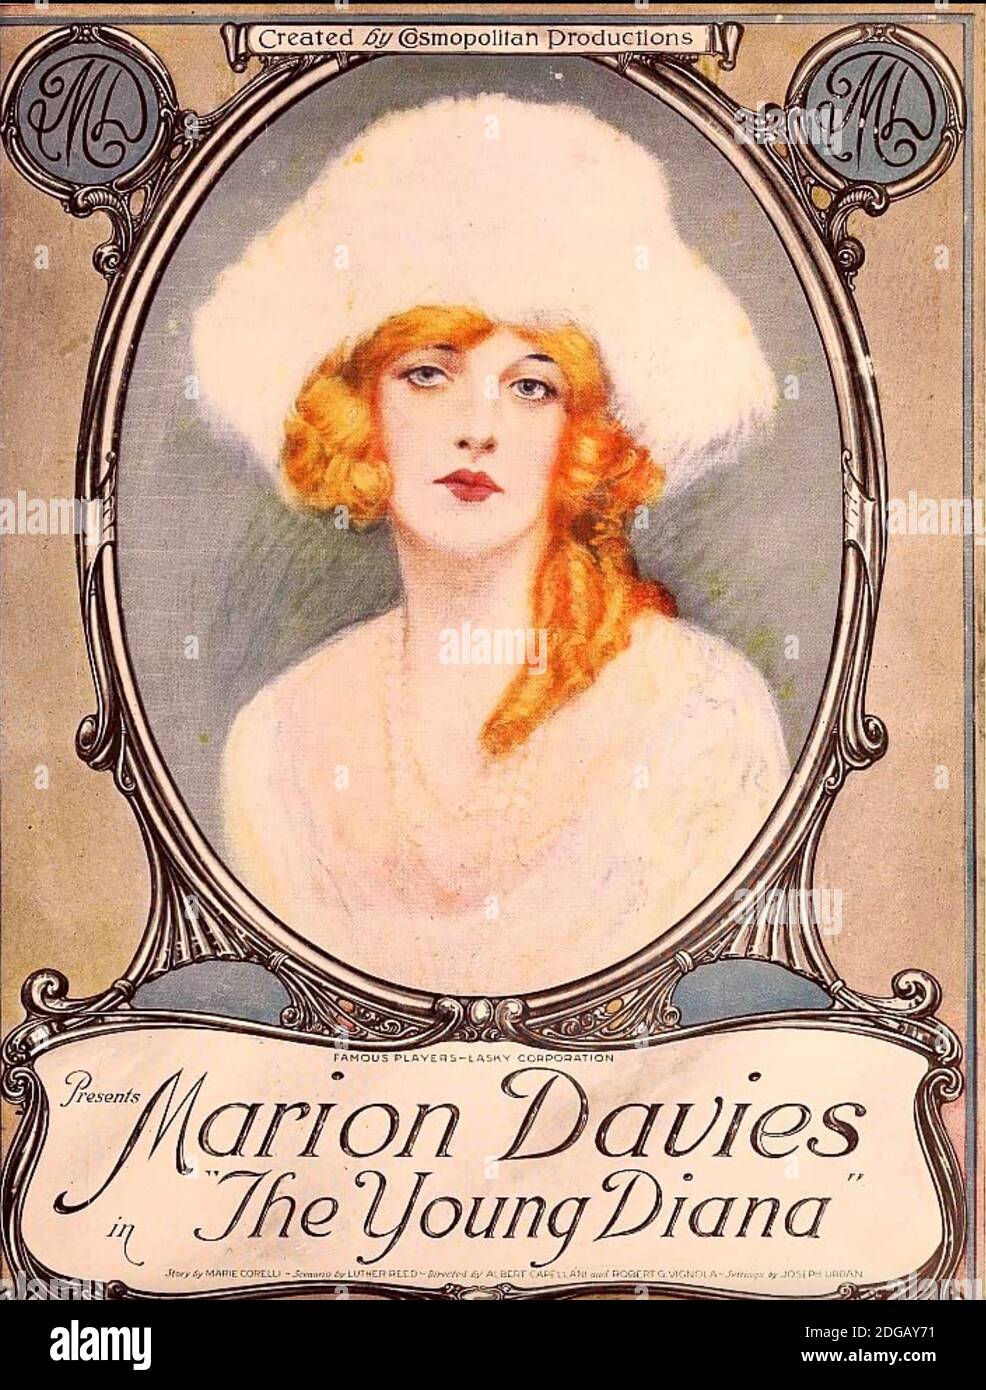 LA GIOVANE PELLICOLA silenziosa DIANA 1922 Paramount con Marion Davies Foto Stock